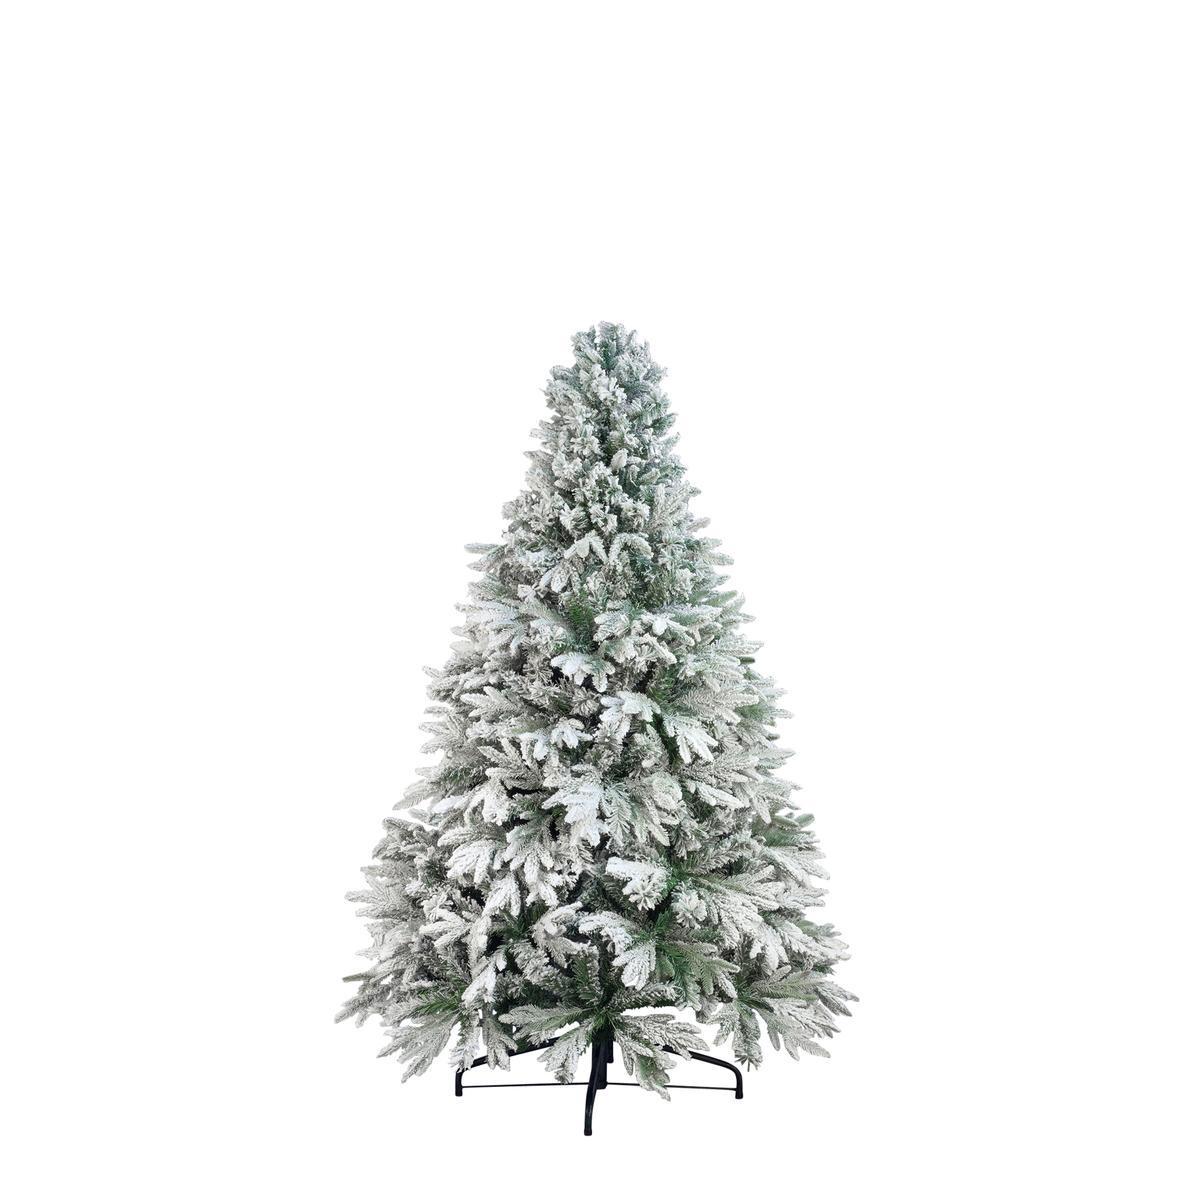 Sapin de Noël blizzard - Plastique et métal - Ø 90 x H 150 cm - Vert et blanc